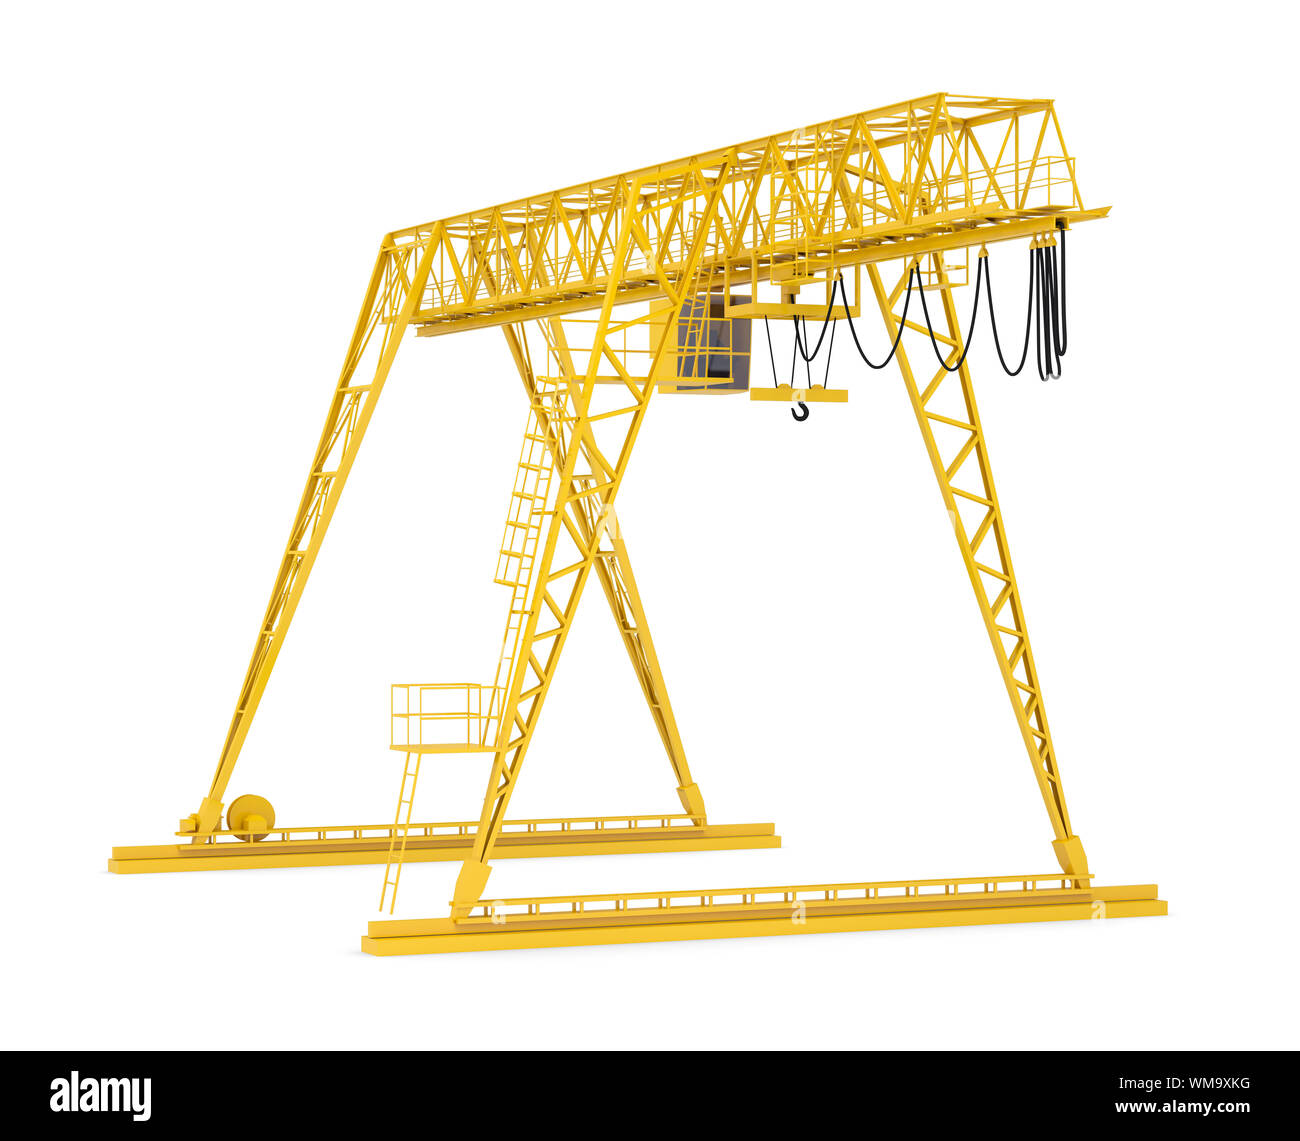 Giallo ponte del gantry crane, semigiro, isolati su sfondo bianco Foto Stock